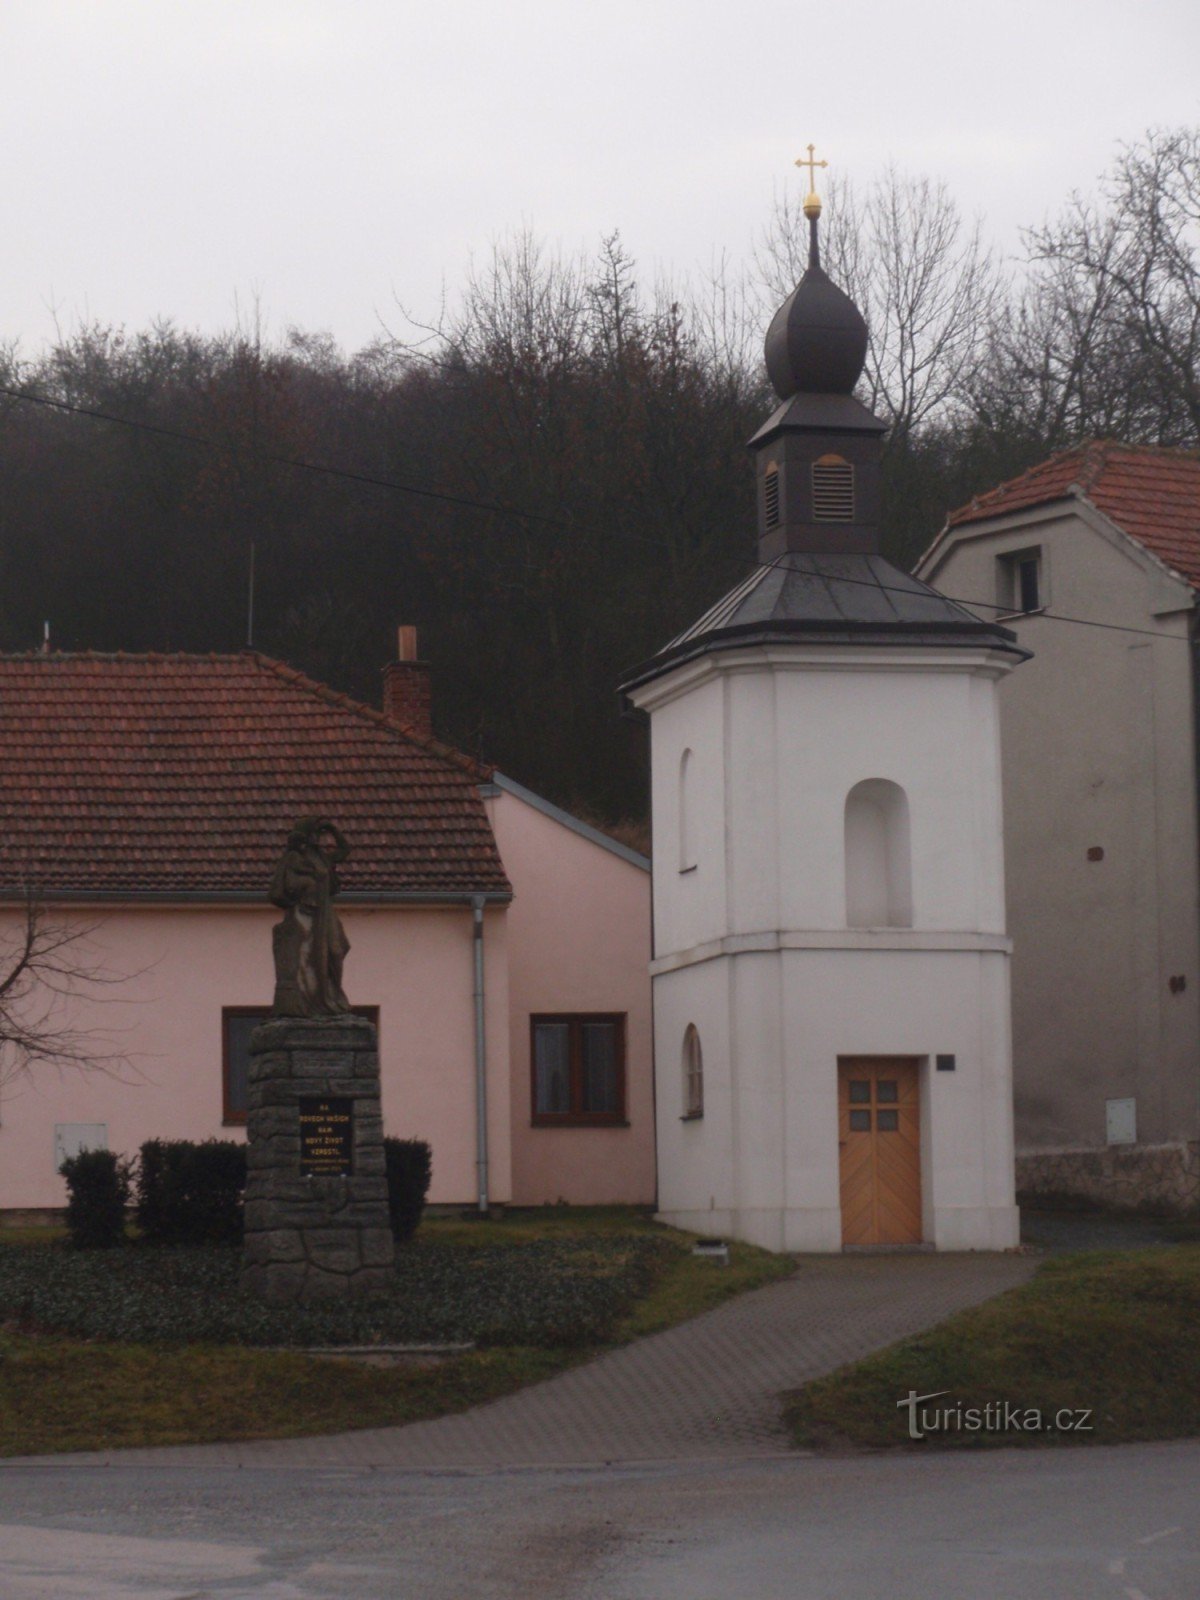 Monument av byn Neslovice